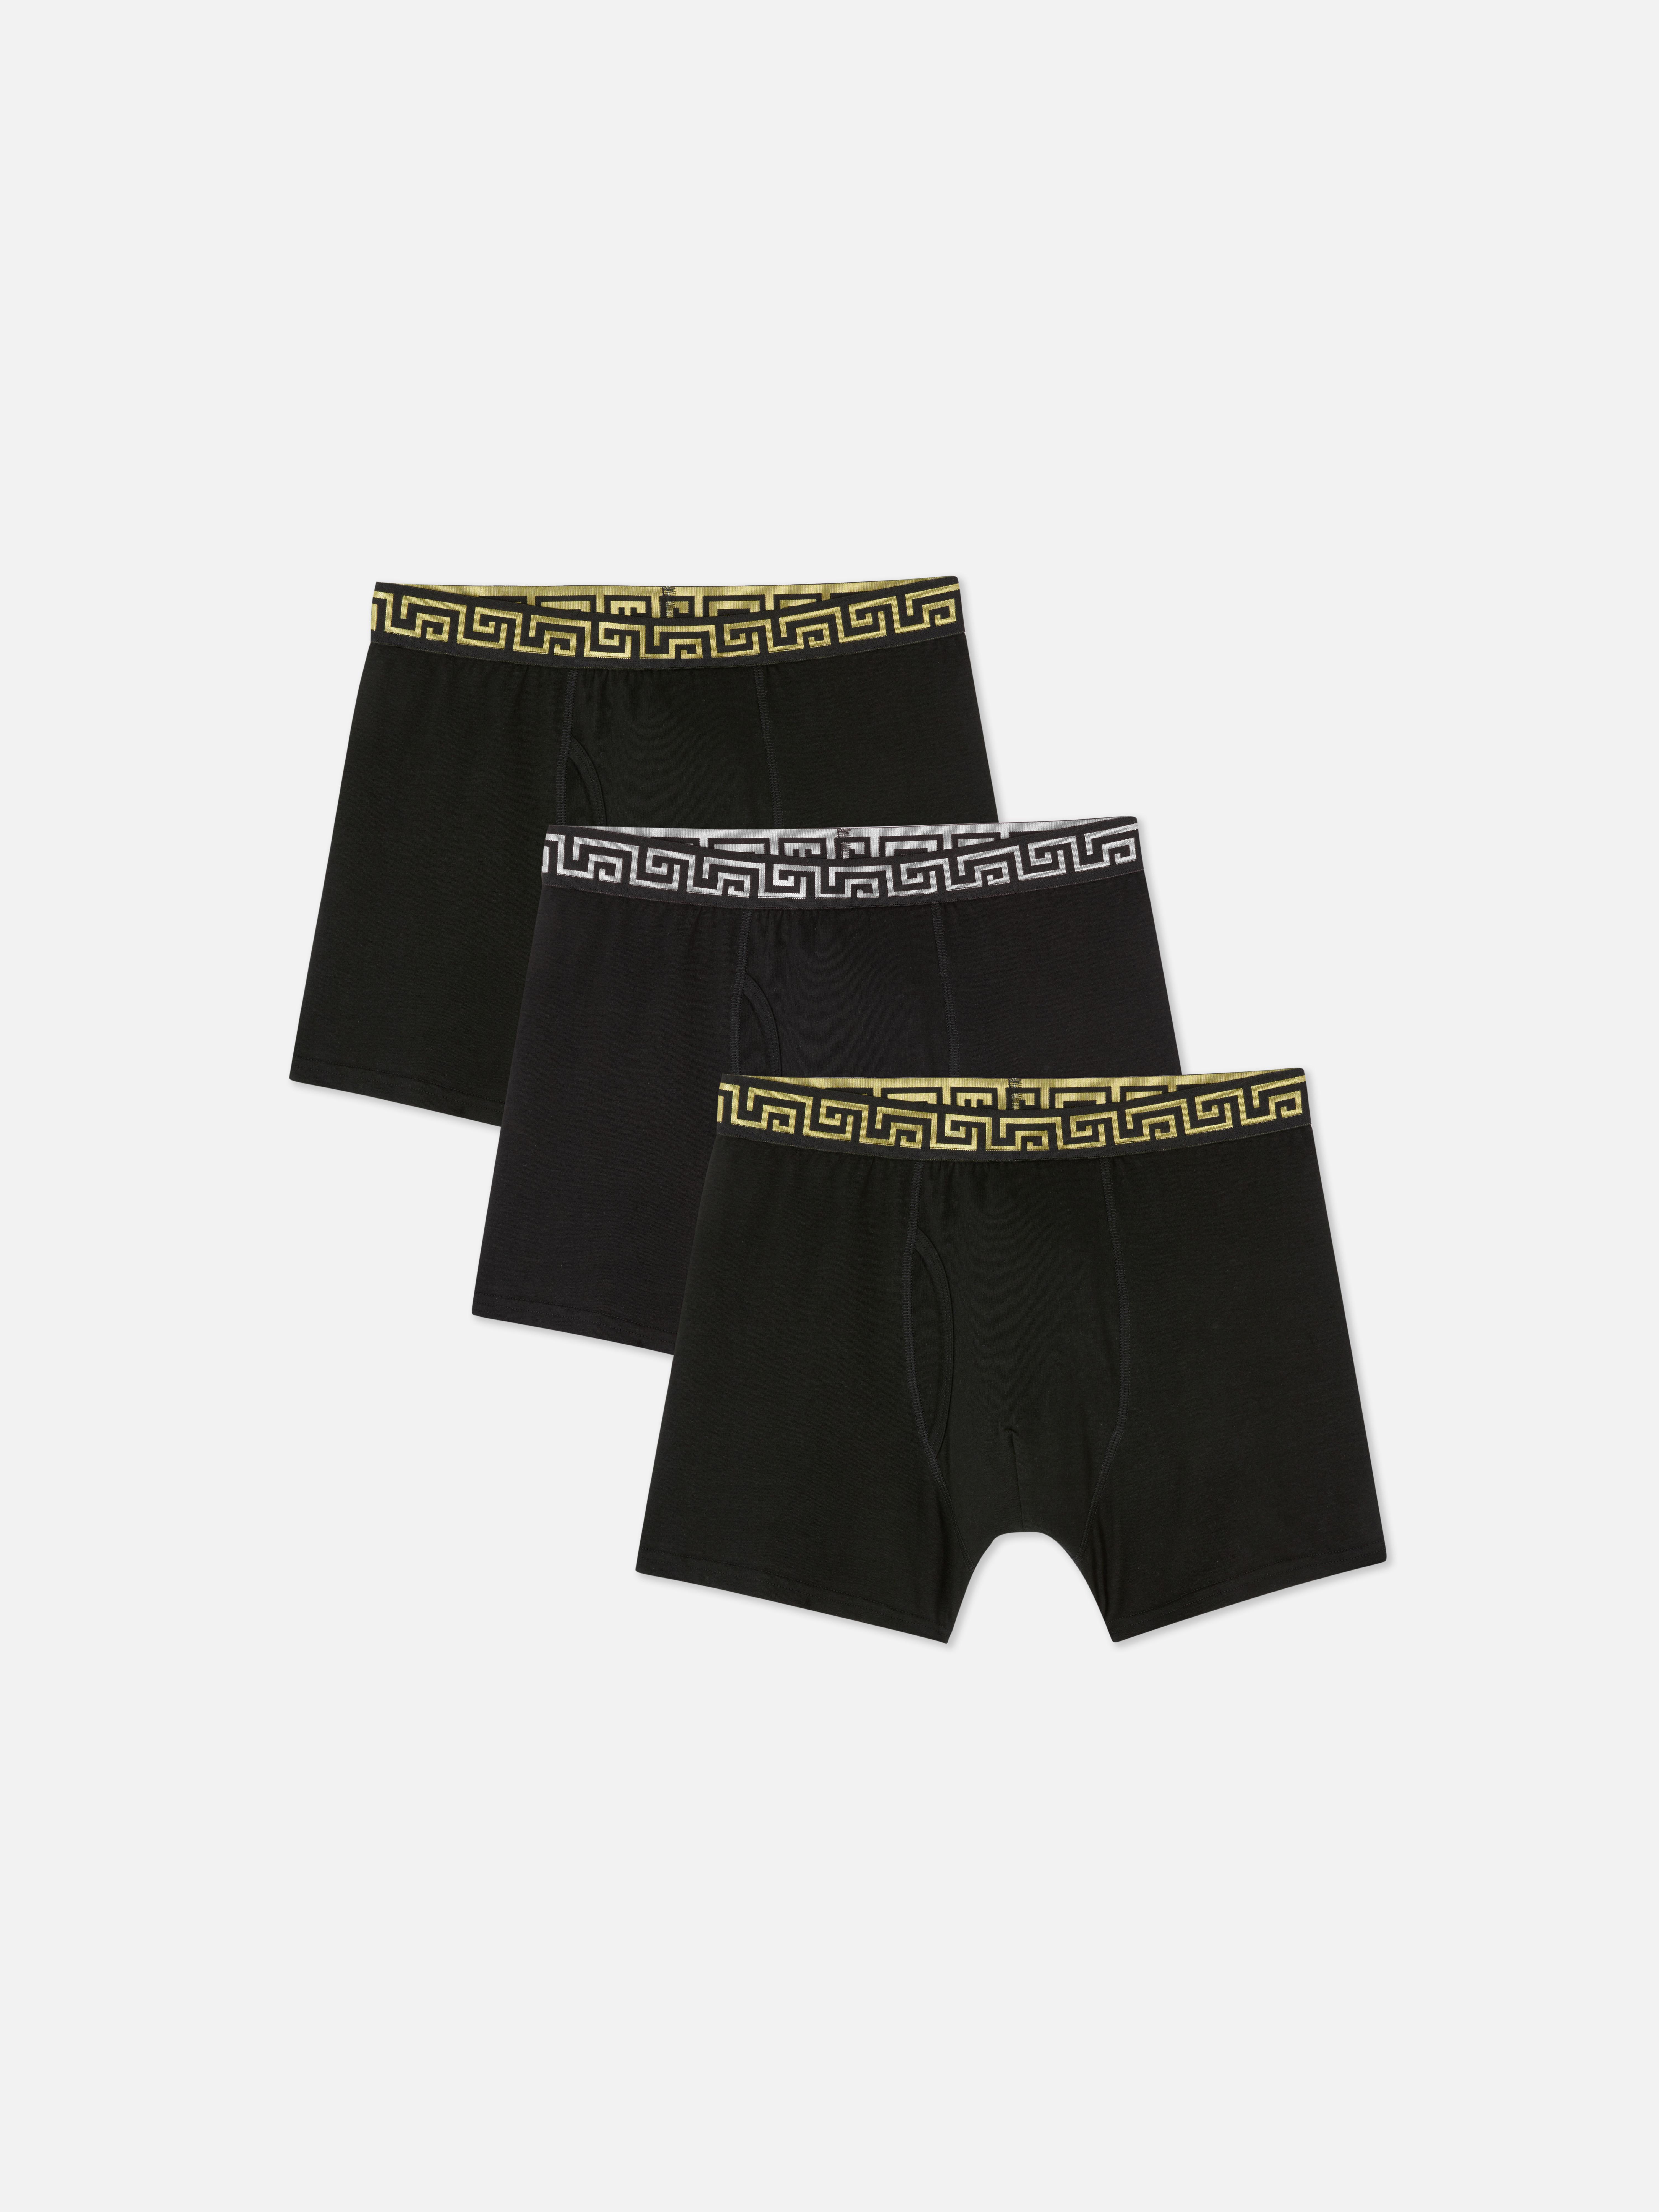 Primark Men Briefs Latest Underwear Collection - April 2023 